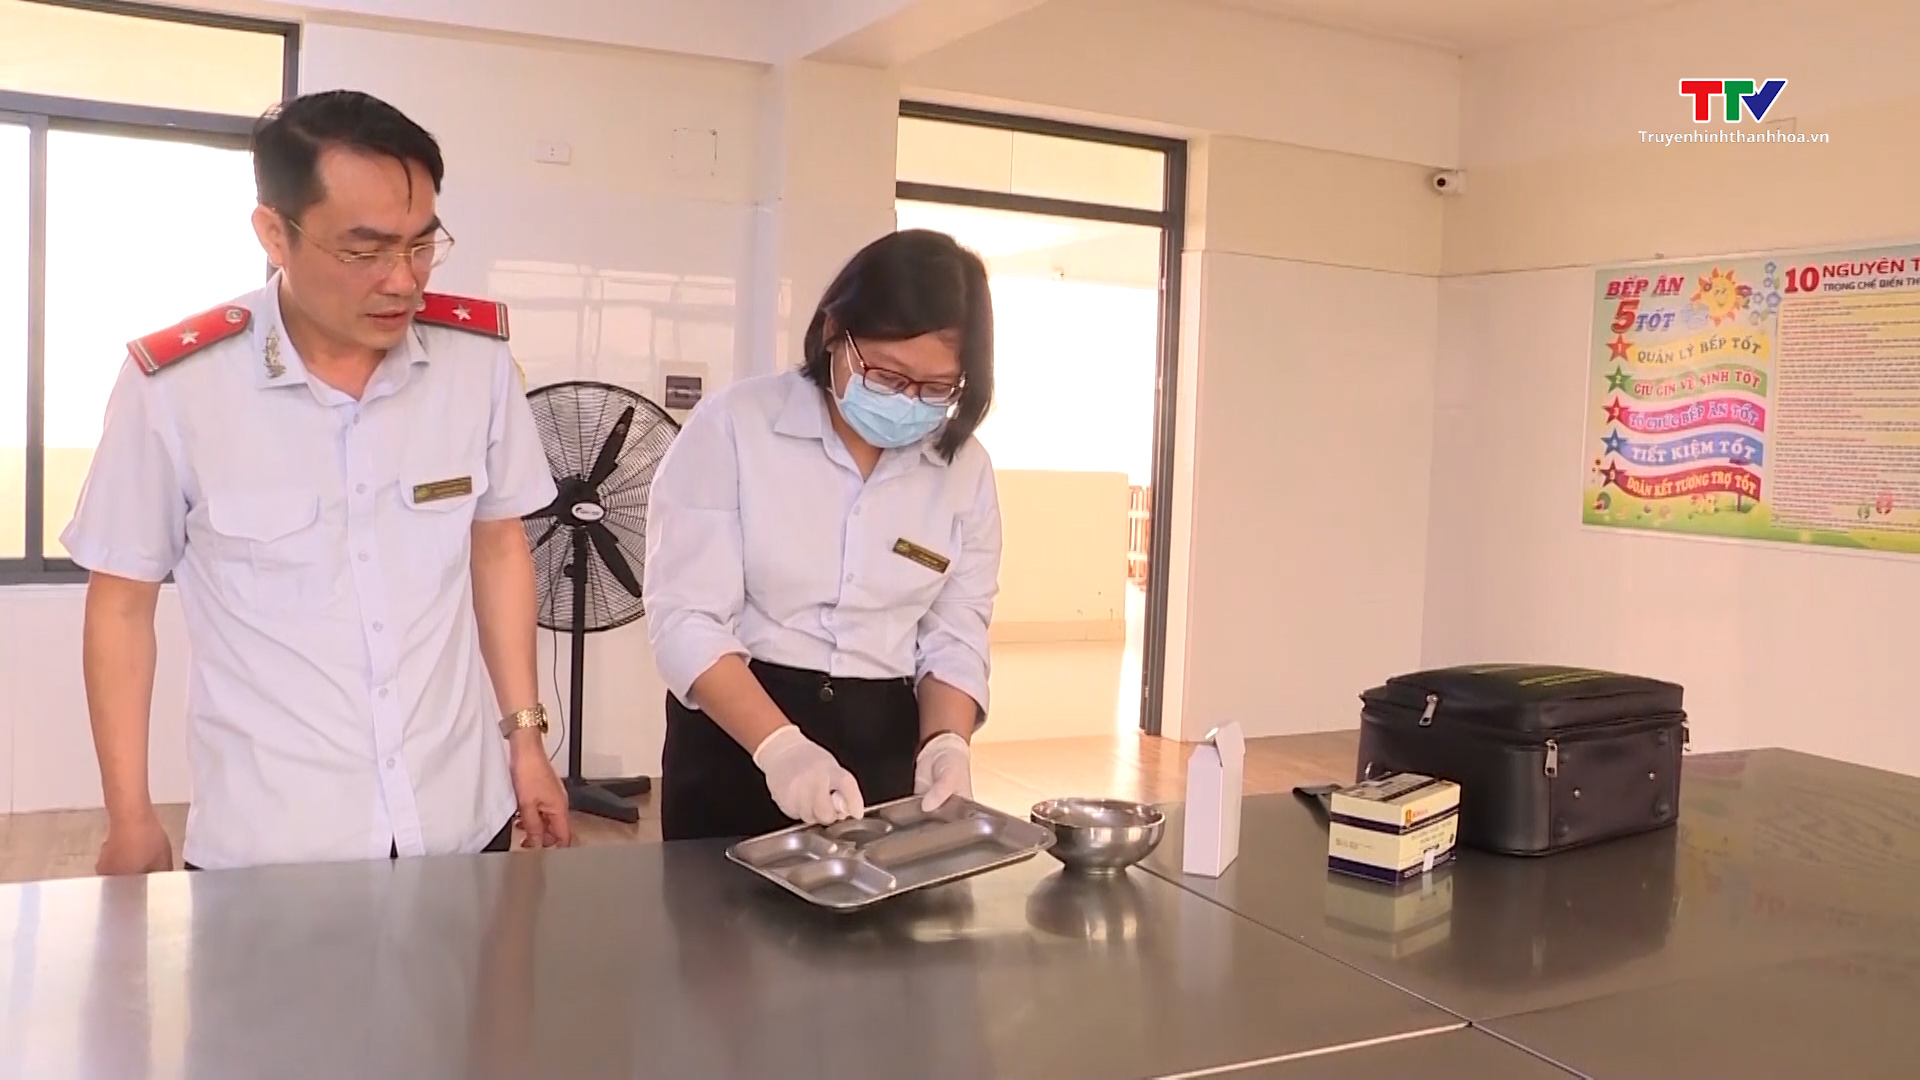 Thành phố Thanh Hóa đảm bảo an toàn thực phẩm trong bếp ăn bán trú trường học - Ảnh 3.